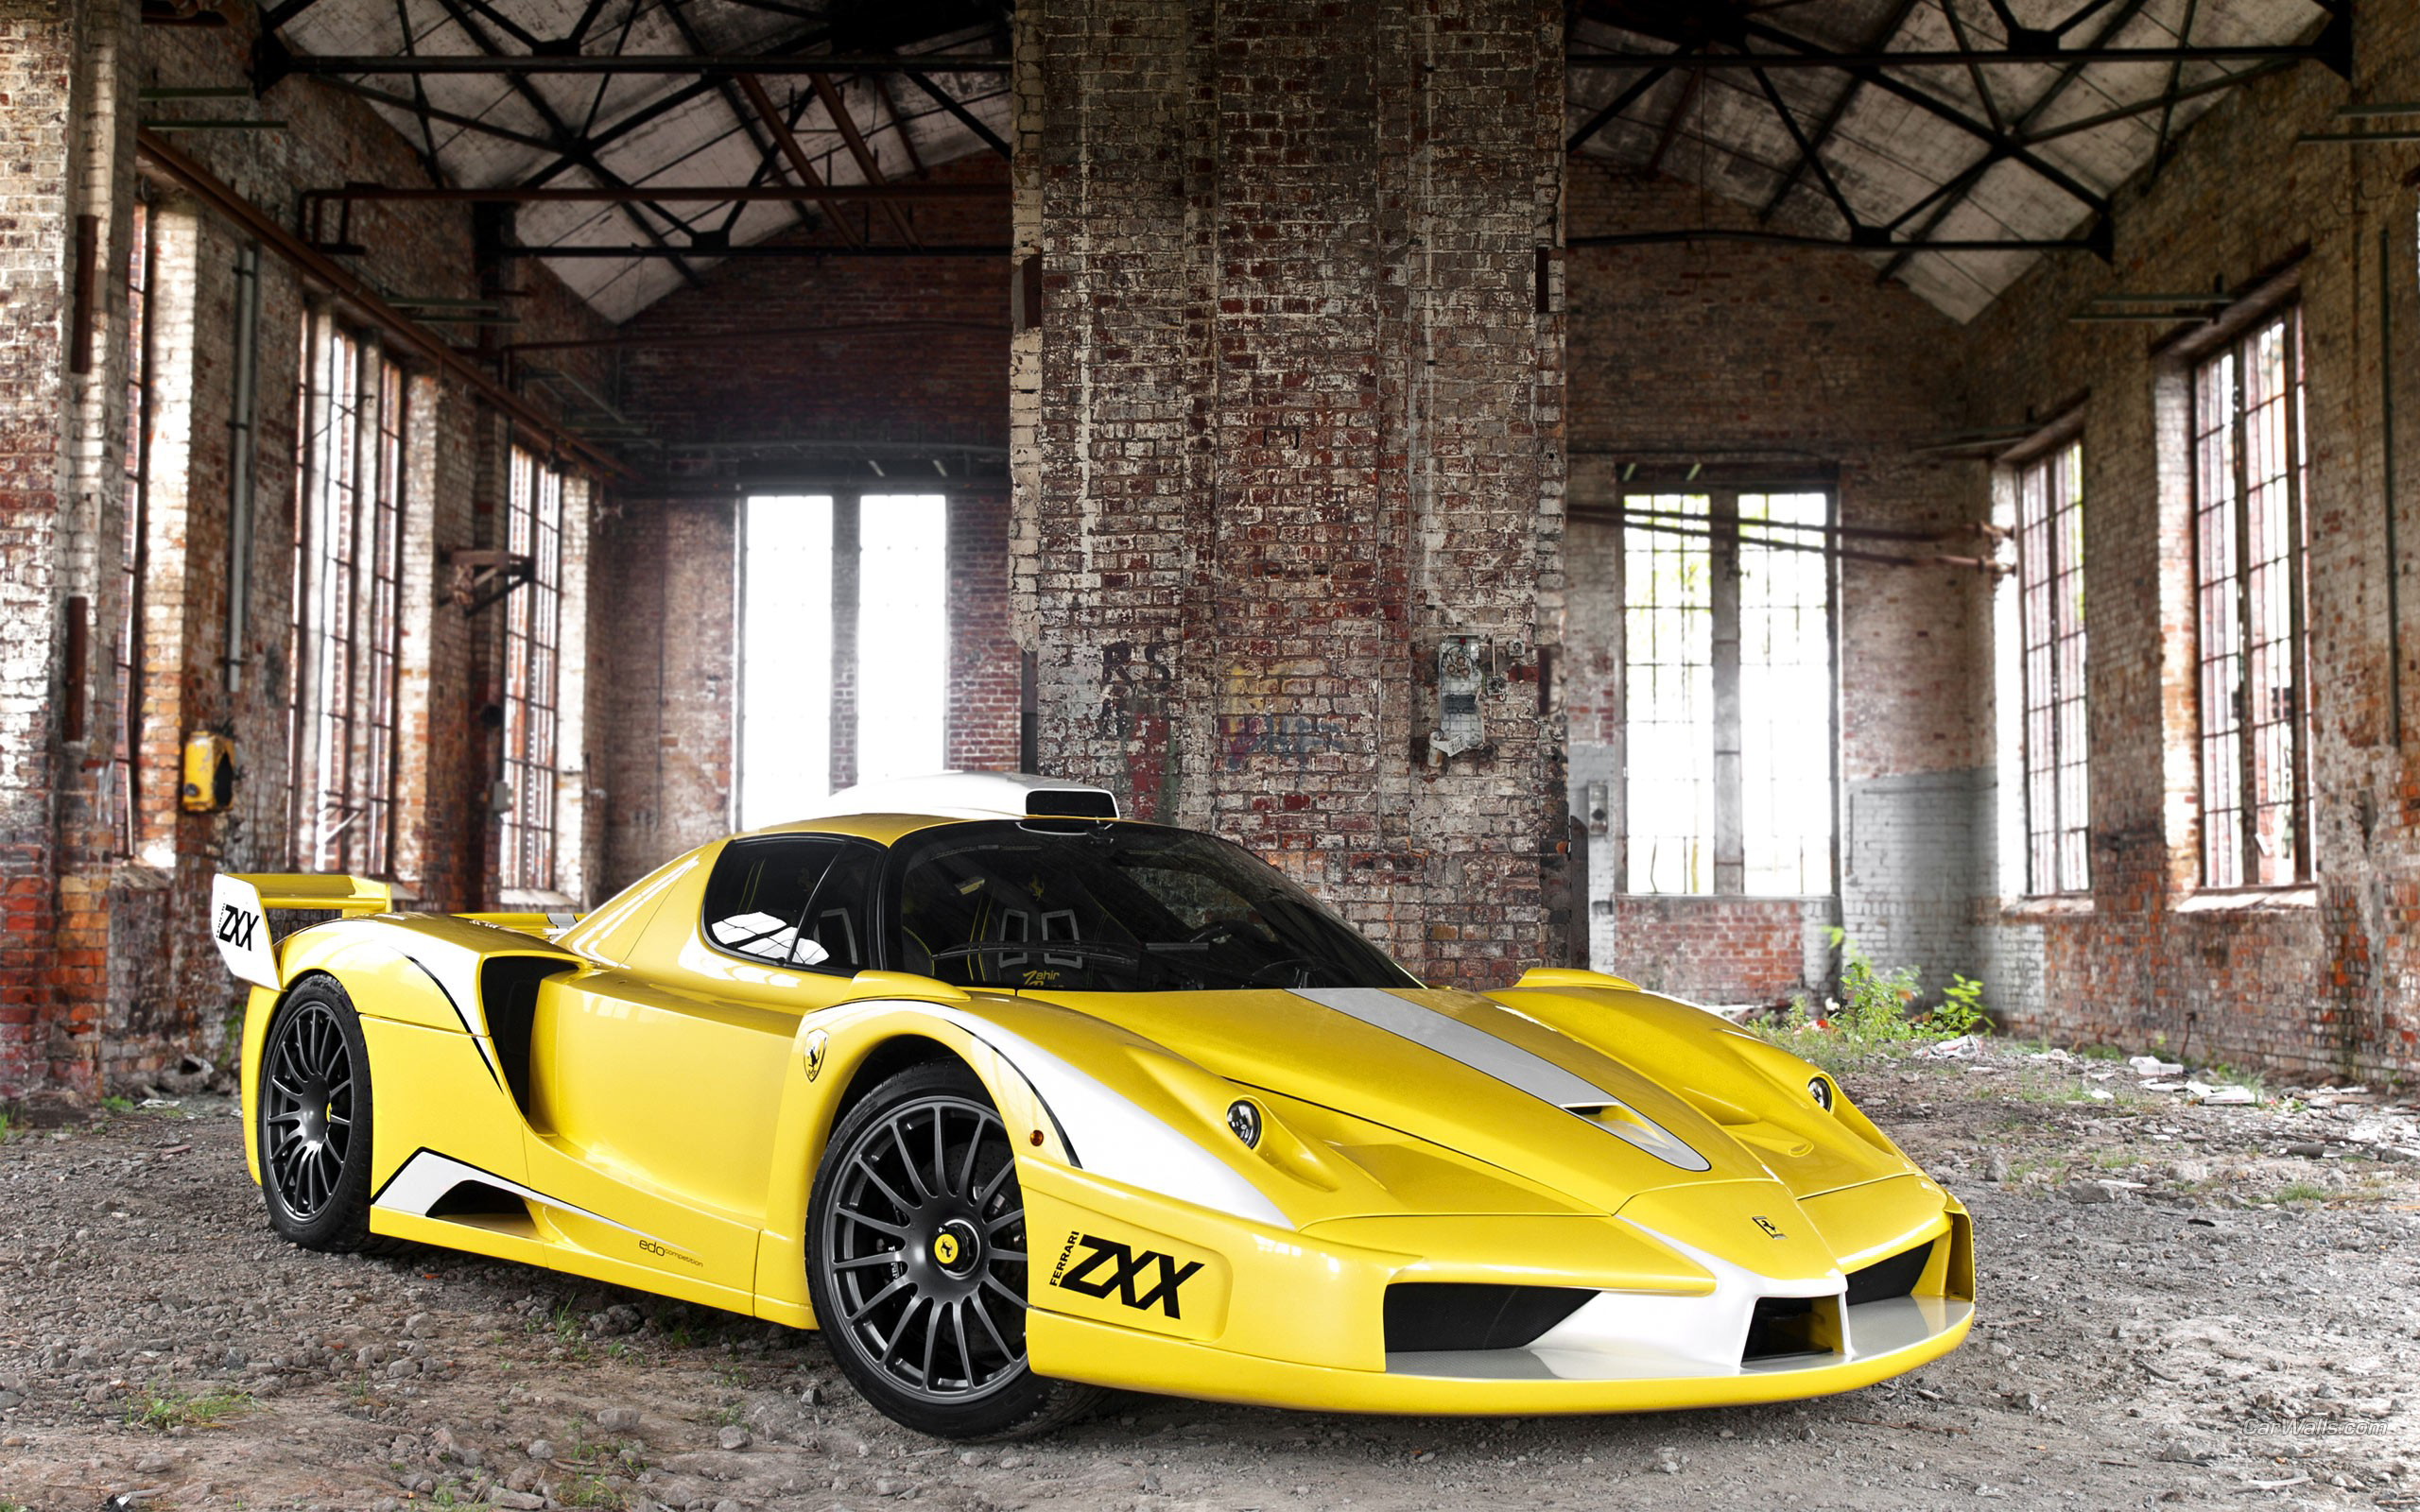 Descarga gratuita de fondo de pantalla para móvil de Ferrari Enzo Zxx, Ferrari, Vehículos.